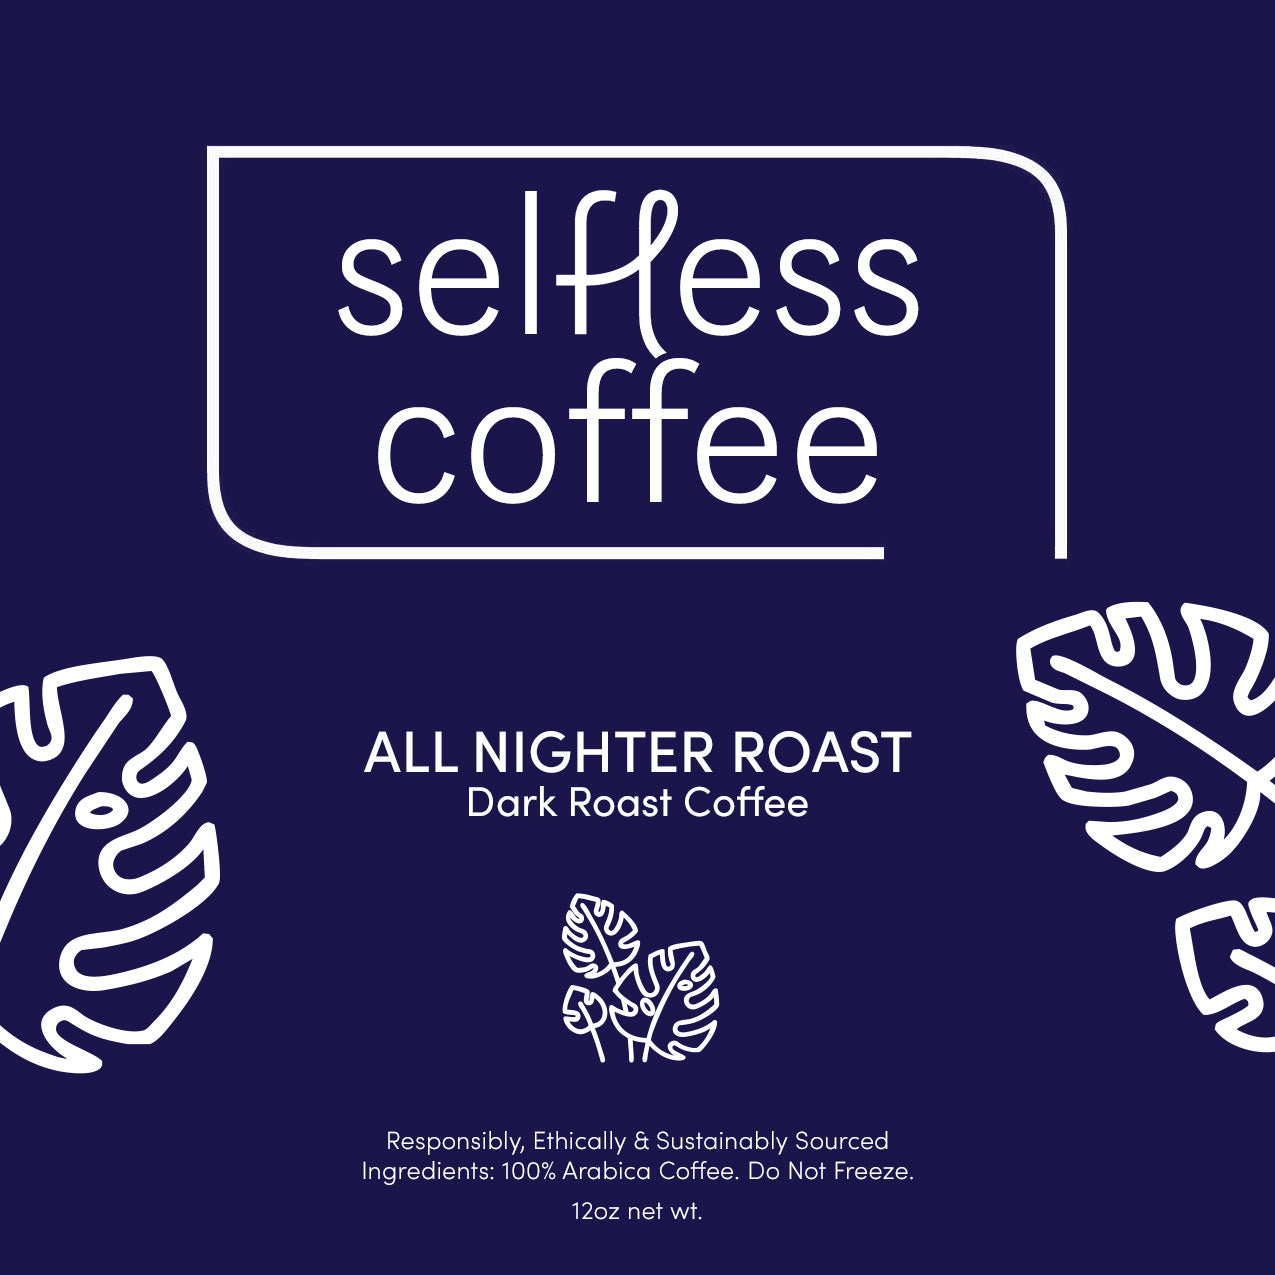 All Nighter Roast : Dark Roast Coffee